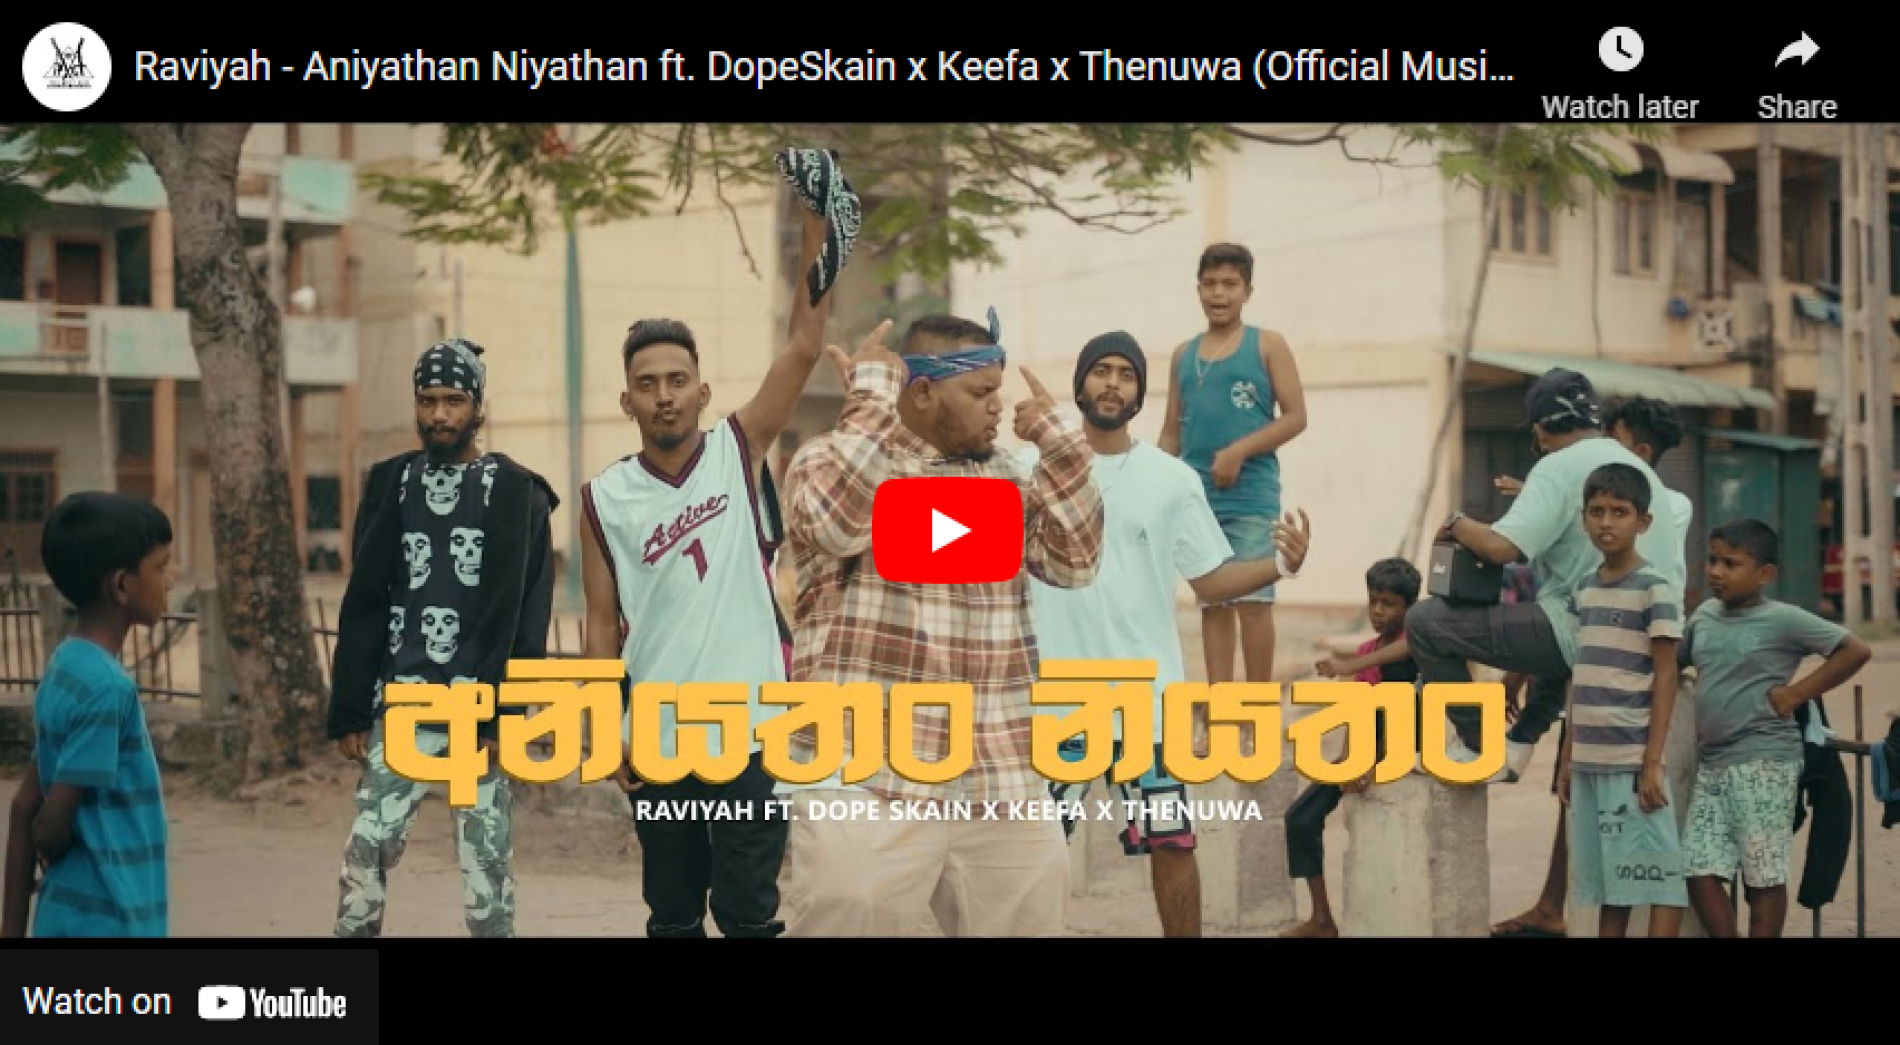 New Music : Raviyah – Aniyathan Niyathan ft DopeSkain x Keefa x Thenuwa (Official Music Video)